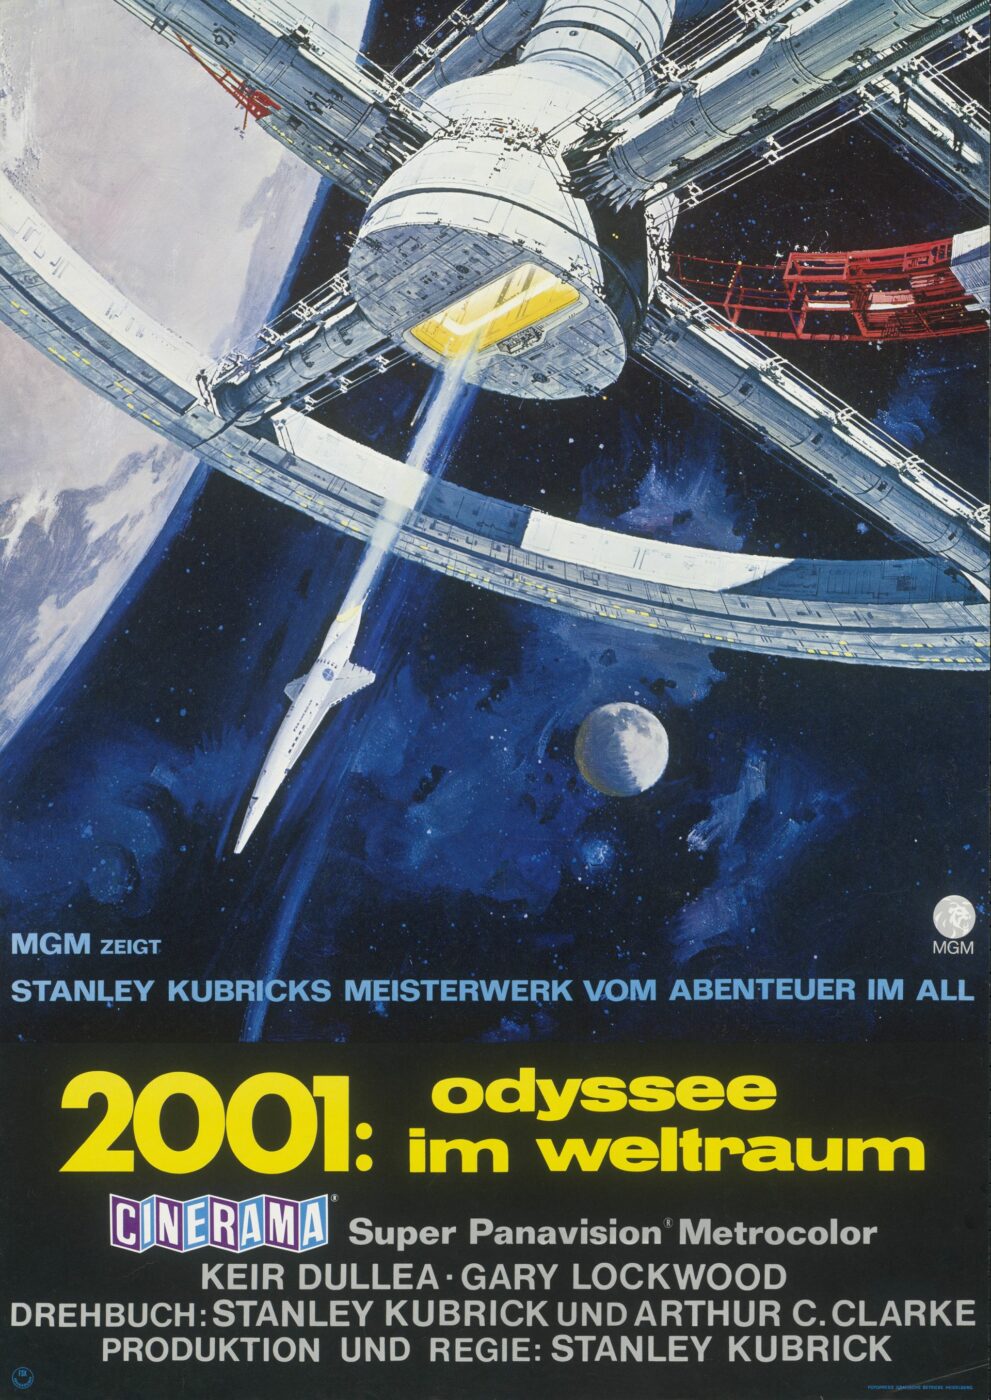 Robert McCall, 2001 Odyssee im Weltraum, 1969, © Staatliche Museen zu Berlin, Kunstbibliothek / Dietmar Katz